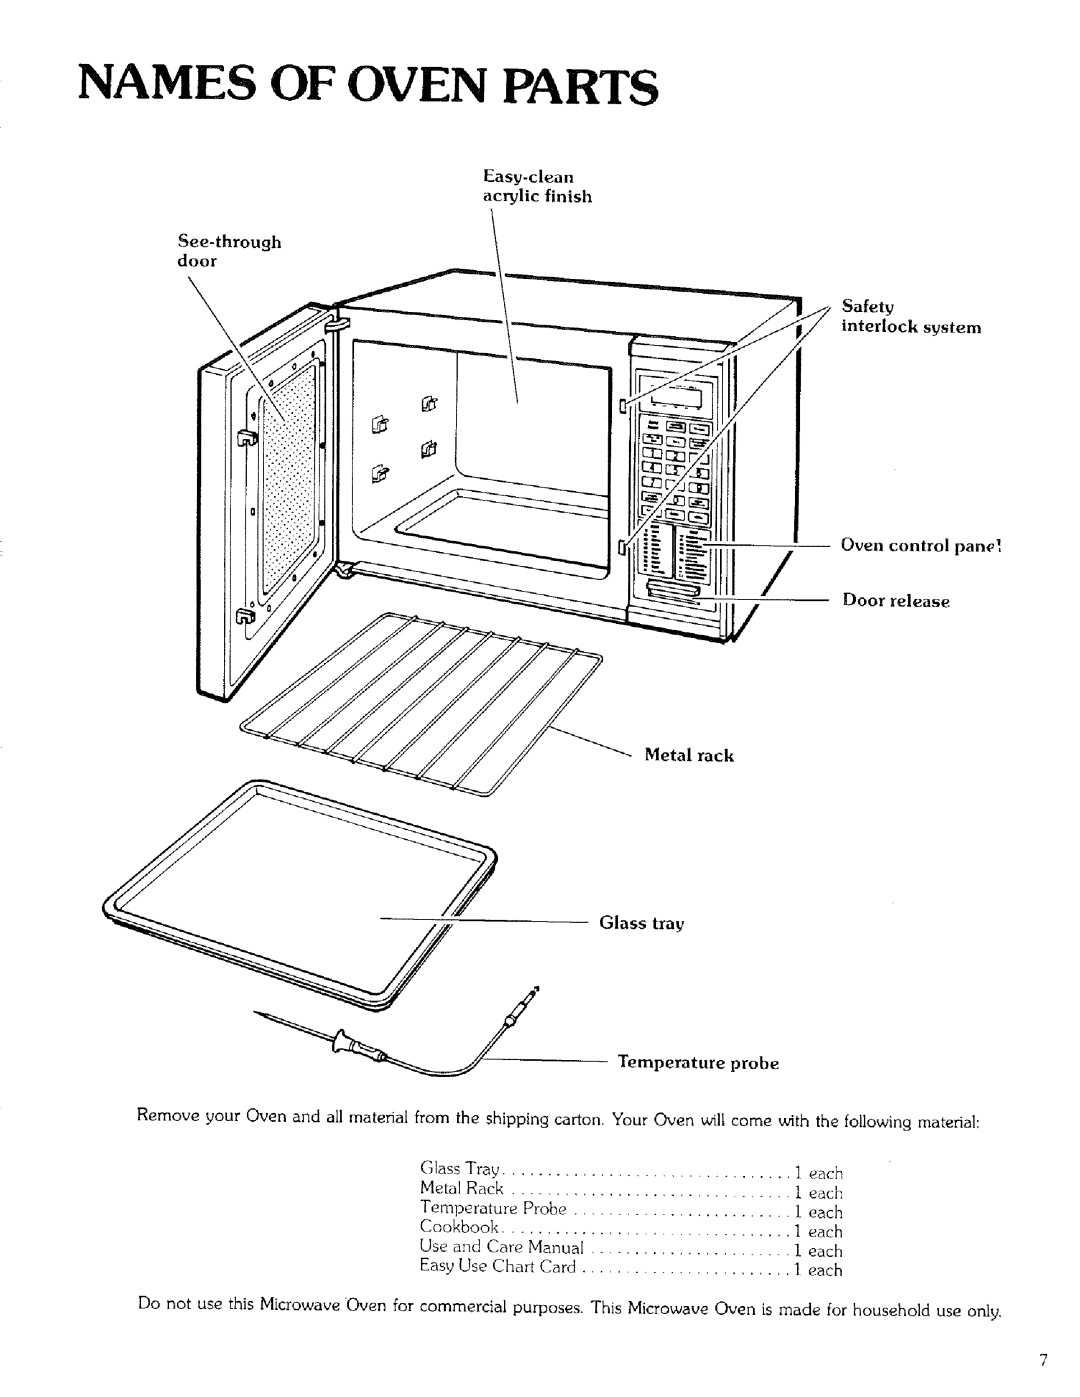 Kenmore 99721 manual Names Of Oven Parts, Door release 